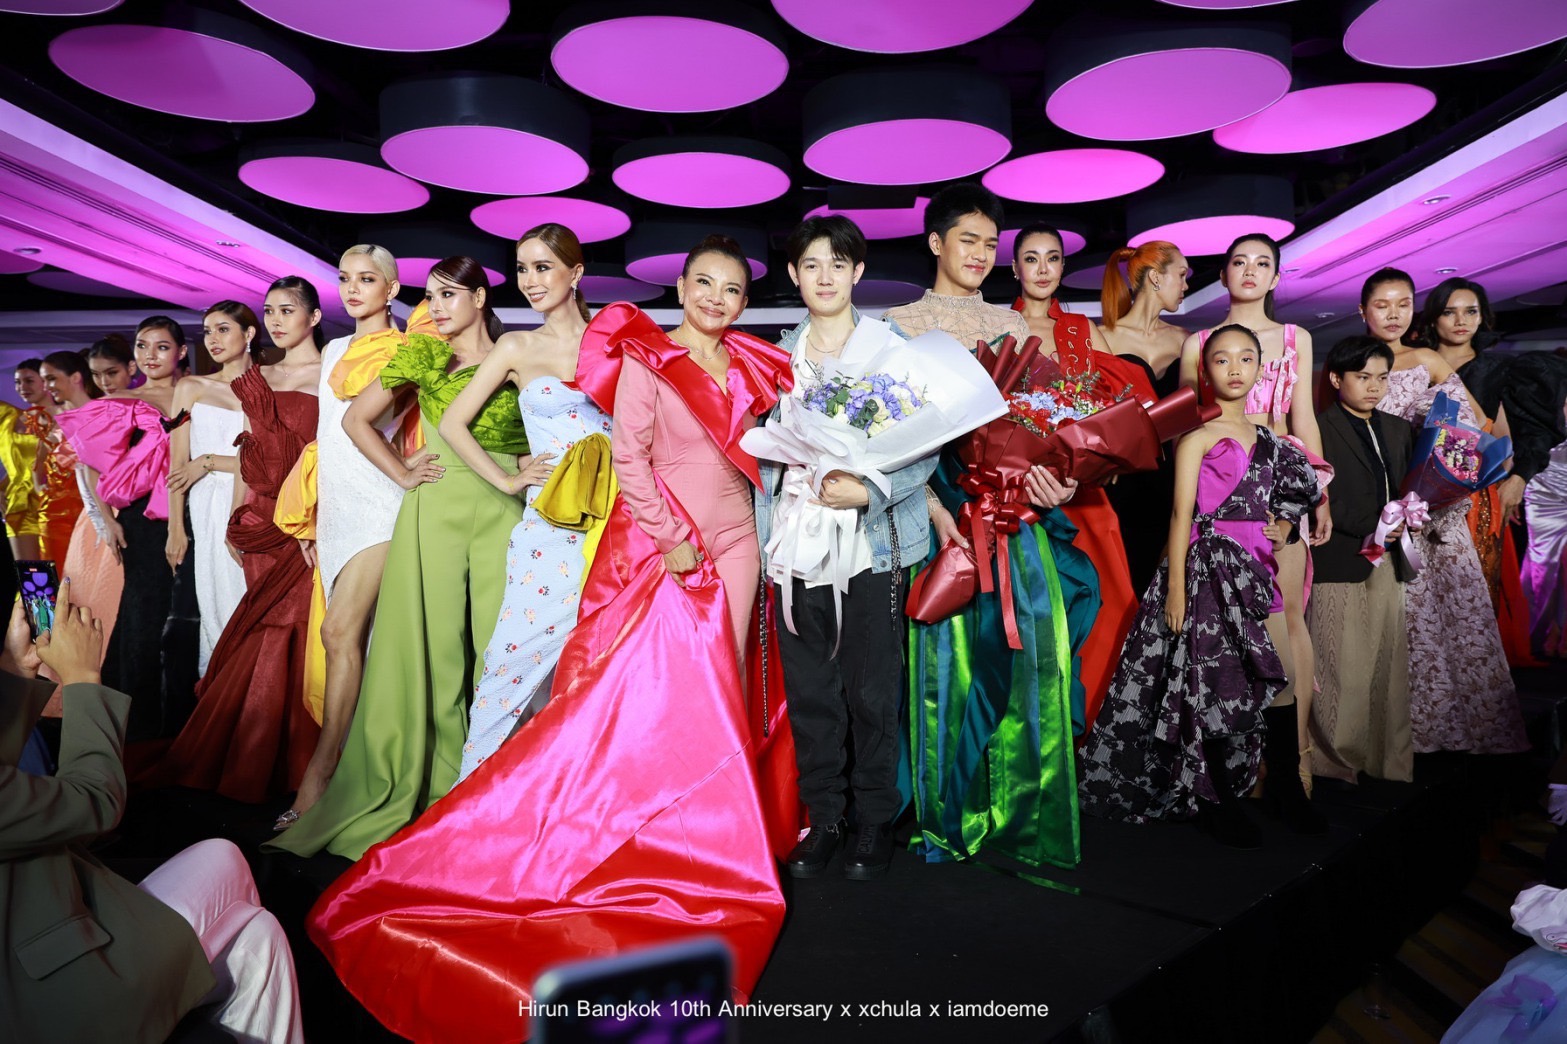 ข่าวแฟชั่น - Hirun Bangkok 10th Year Anniversary Fashion Show ภายใต้คอลเล็กชั่น Futuristic